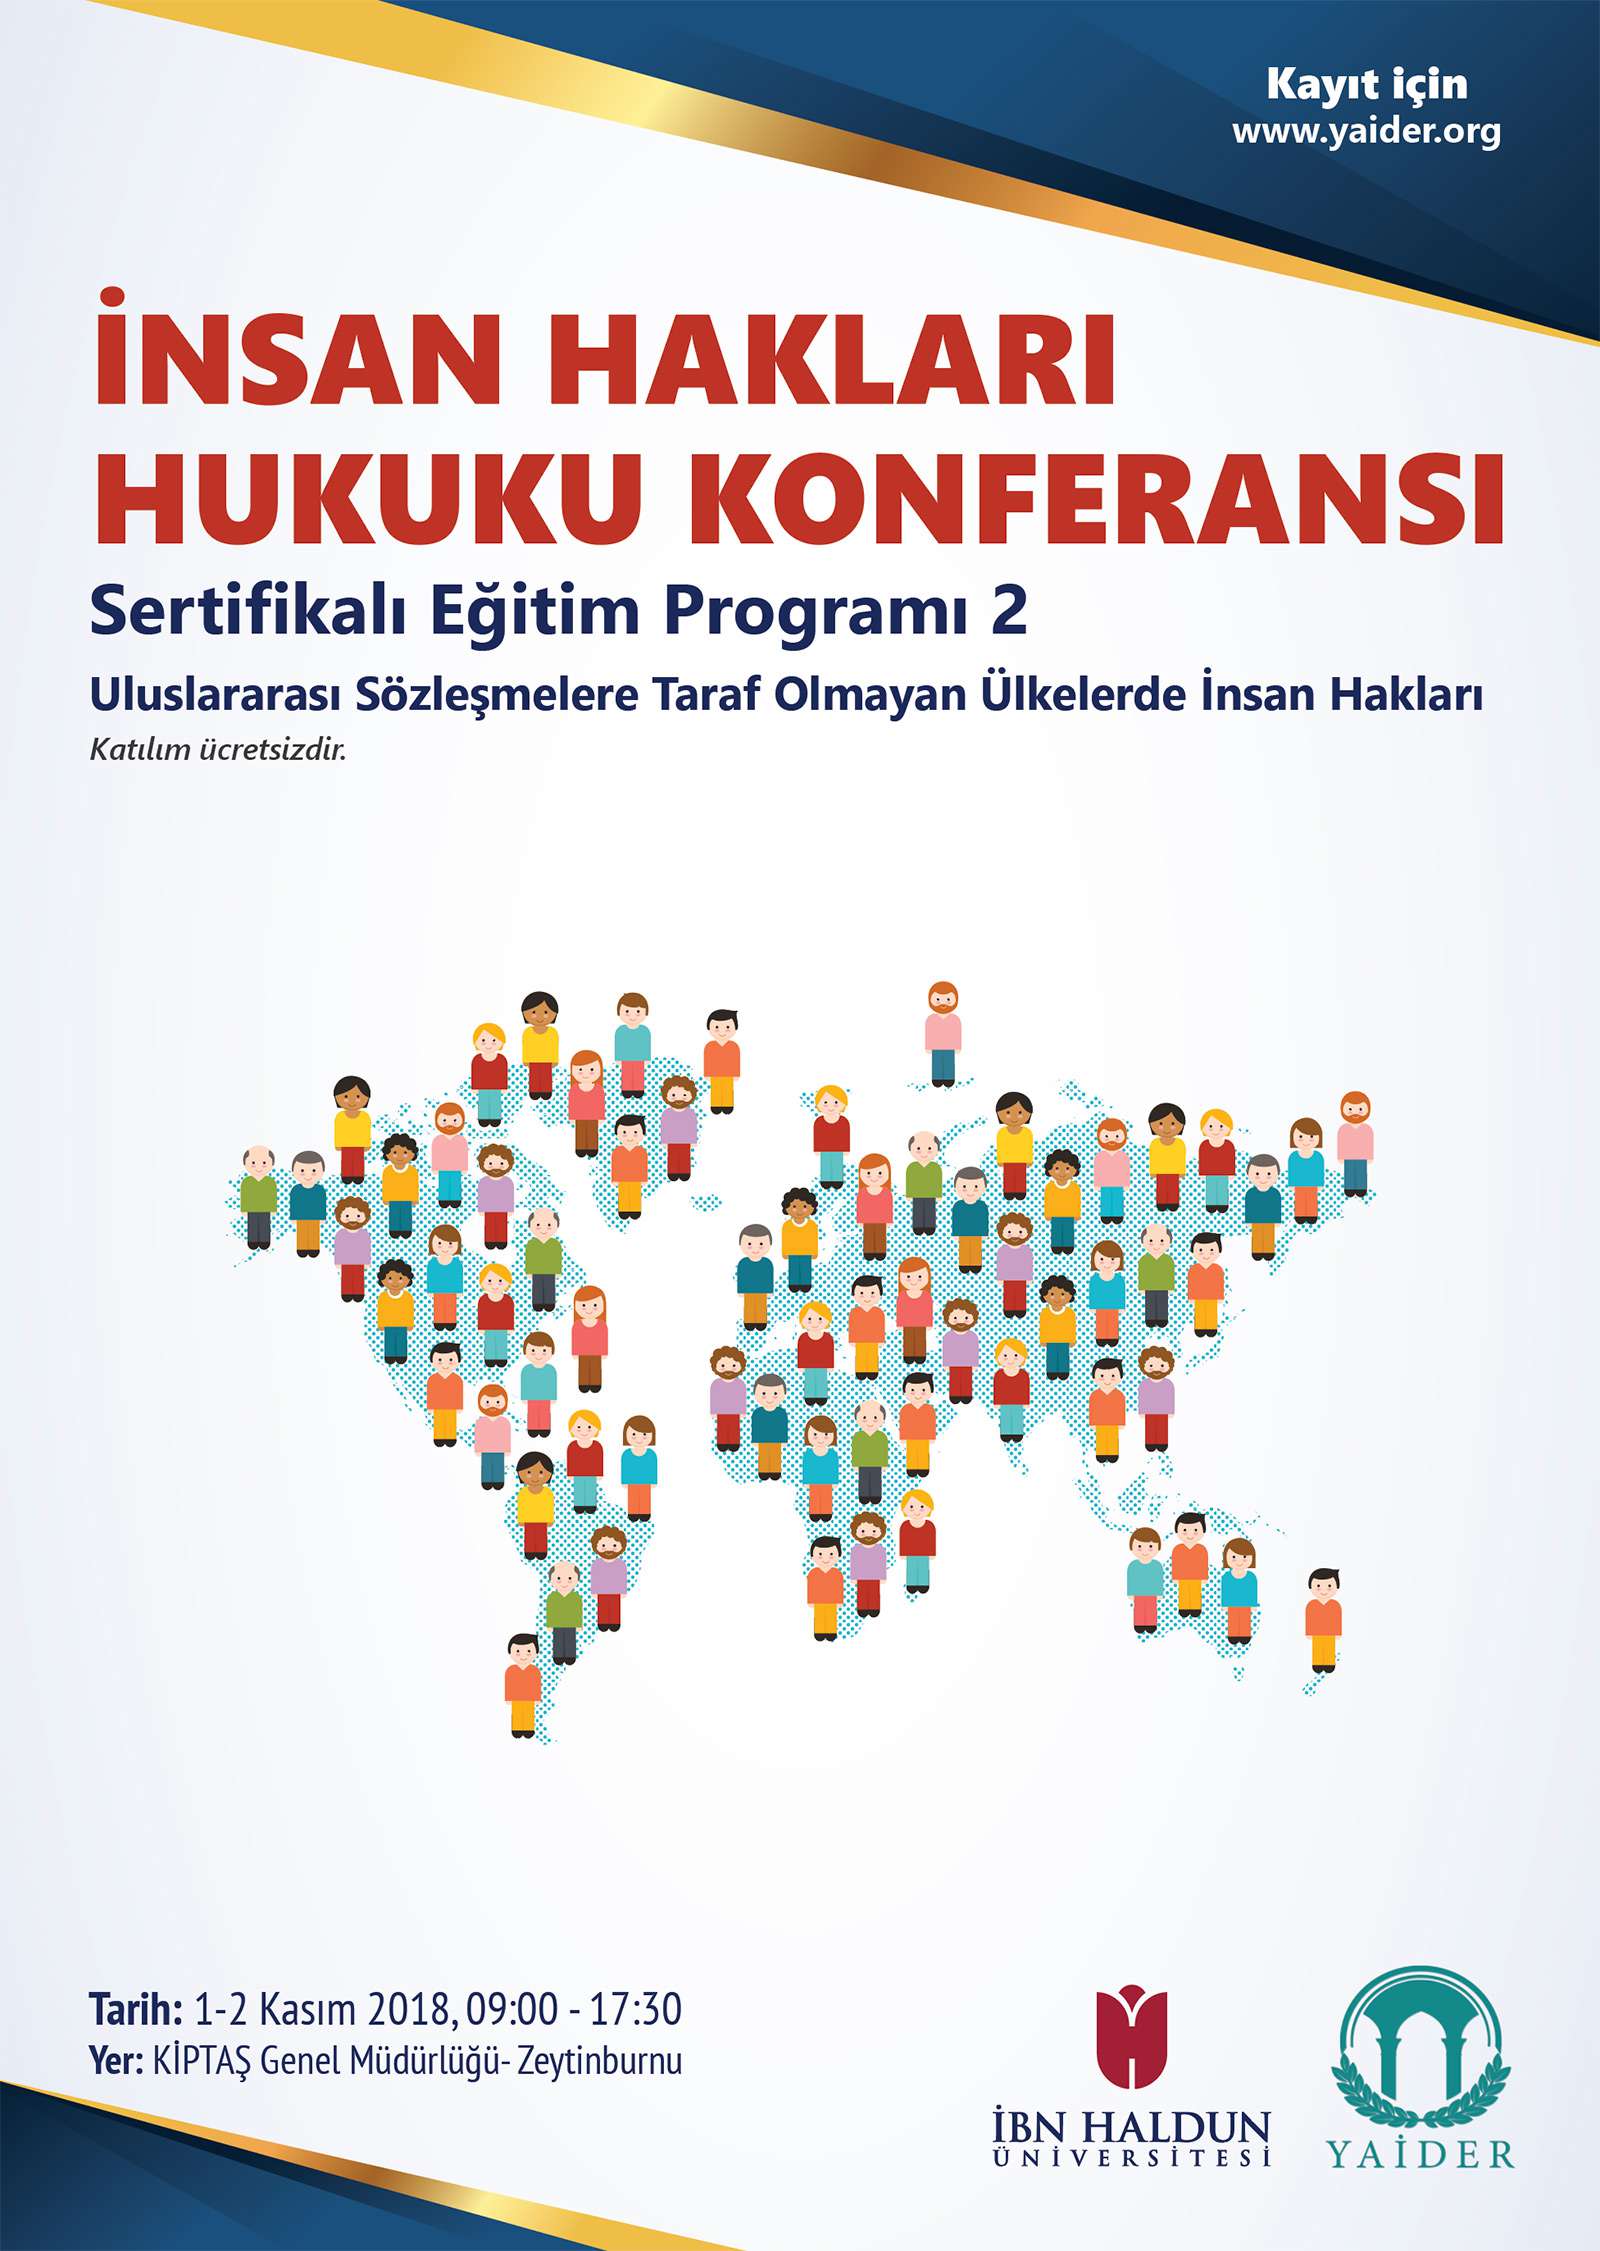 İnsan Hakları Hukuku Konferansı Sertifikalı Eğitim Programı 2